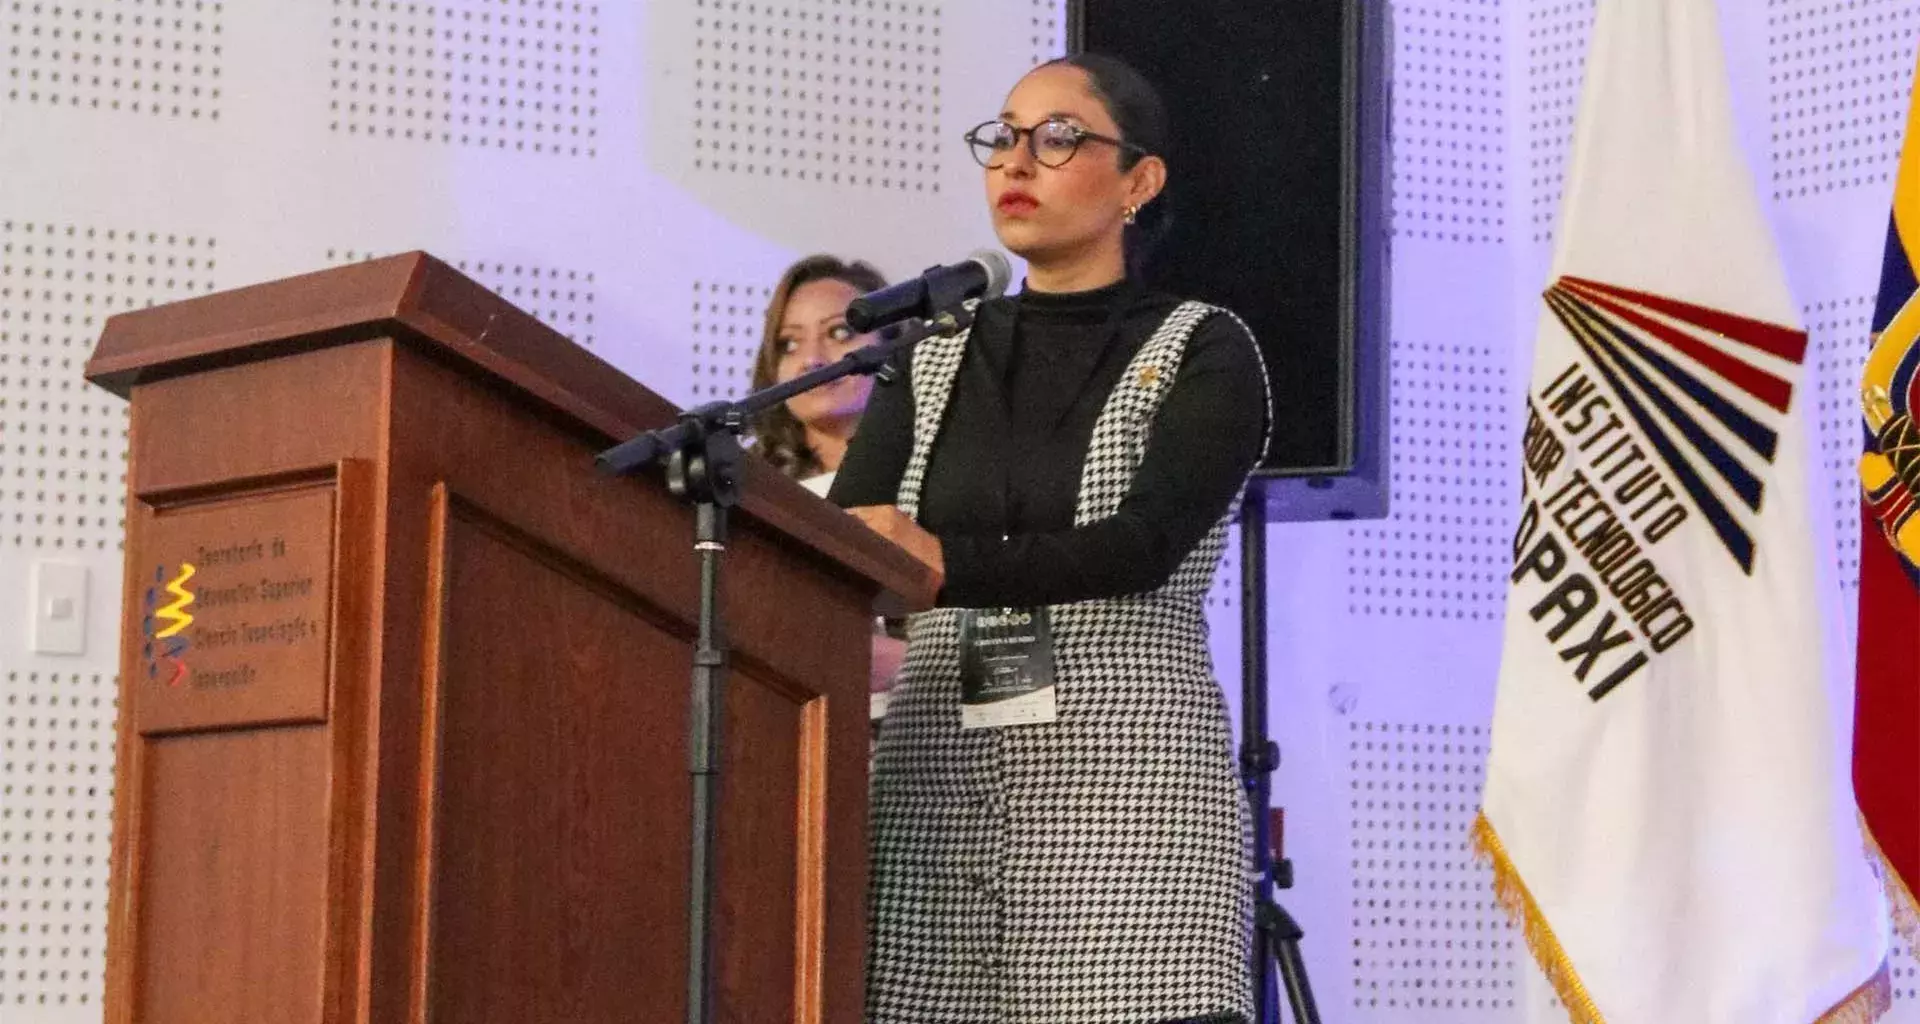 Cristina Rumbo experta del Tec de Monterrey forma parte de Academia Latinoamericana de Derecho Penal y Penitenciario.